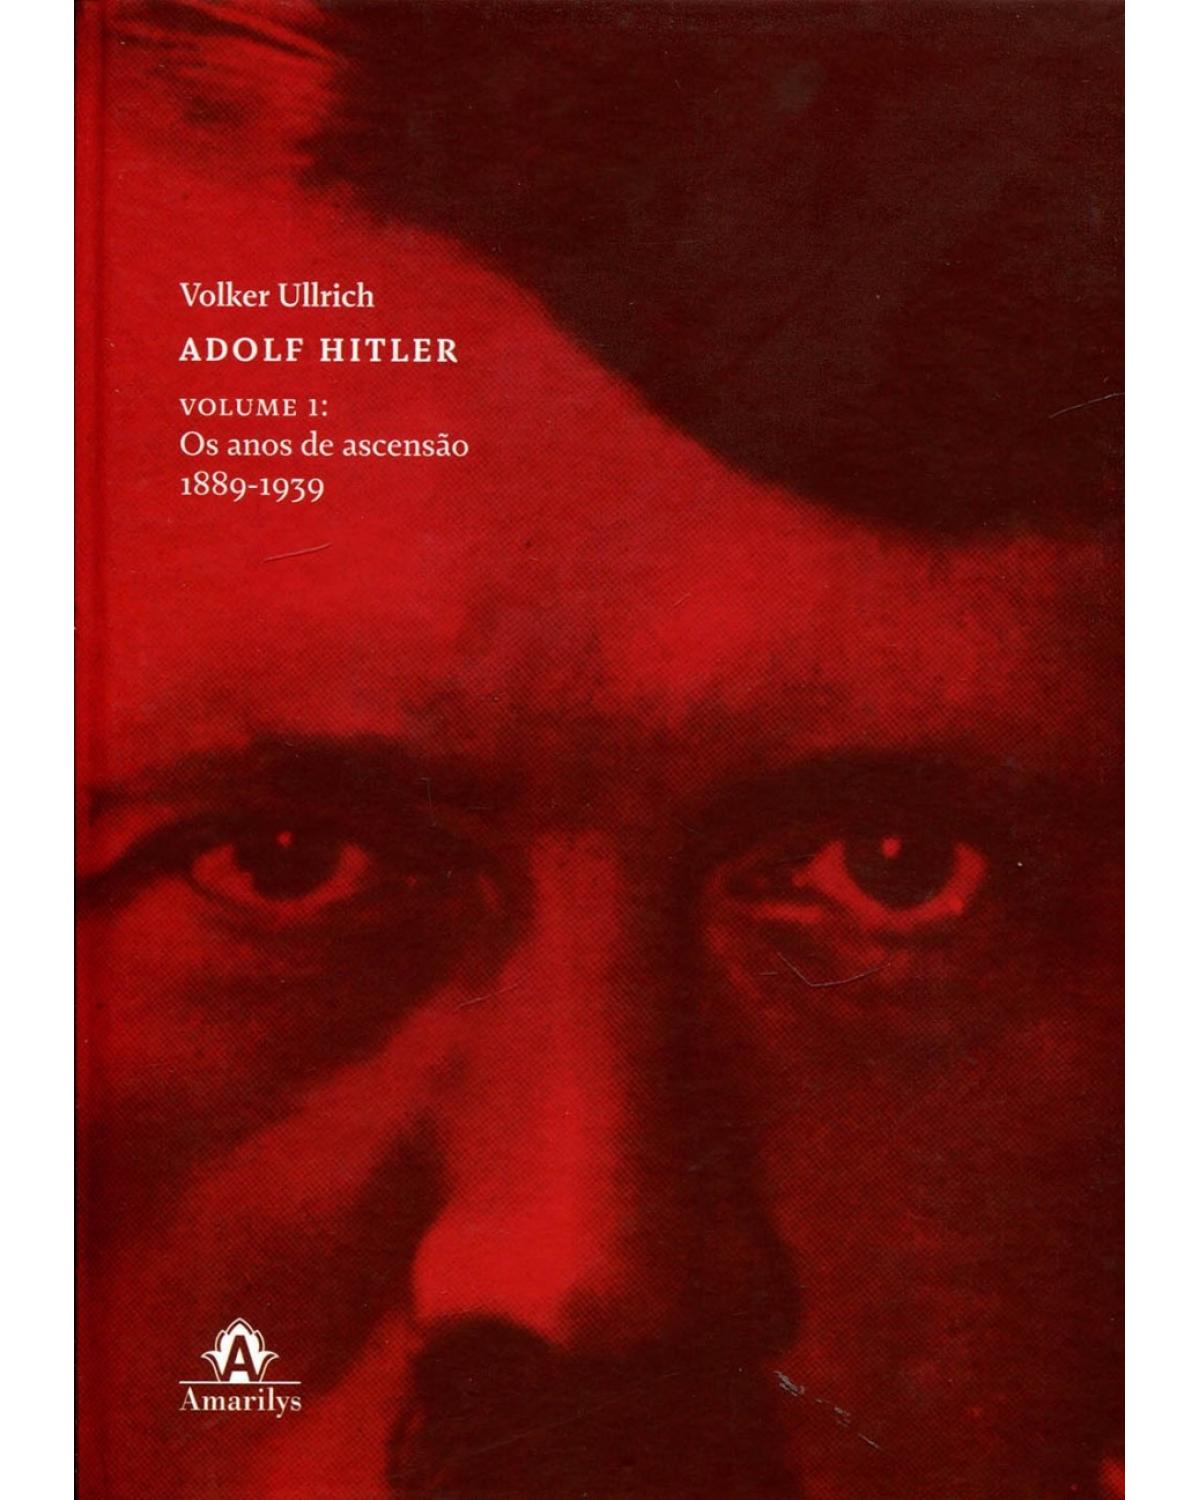 Adolf Hitler - Volume 1: Os anos de ascensão, 1889-1939 - 1ª Edição | 2015